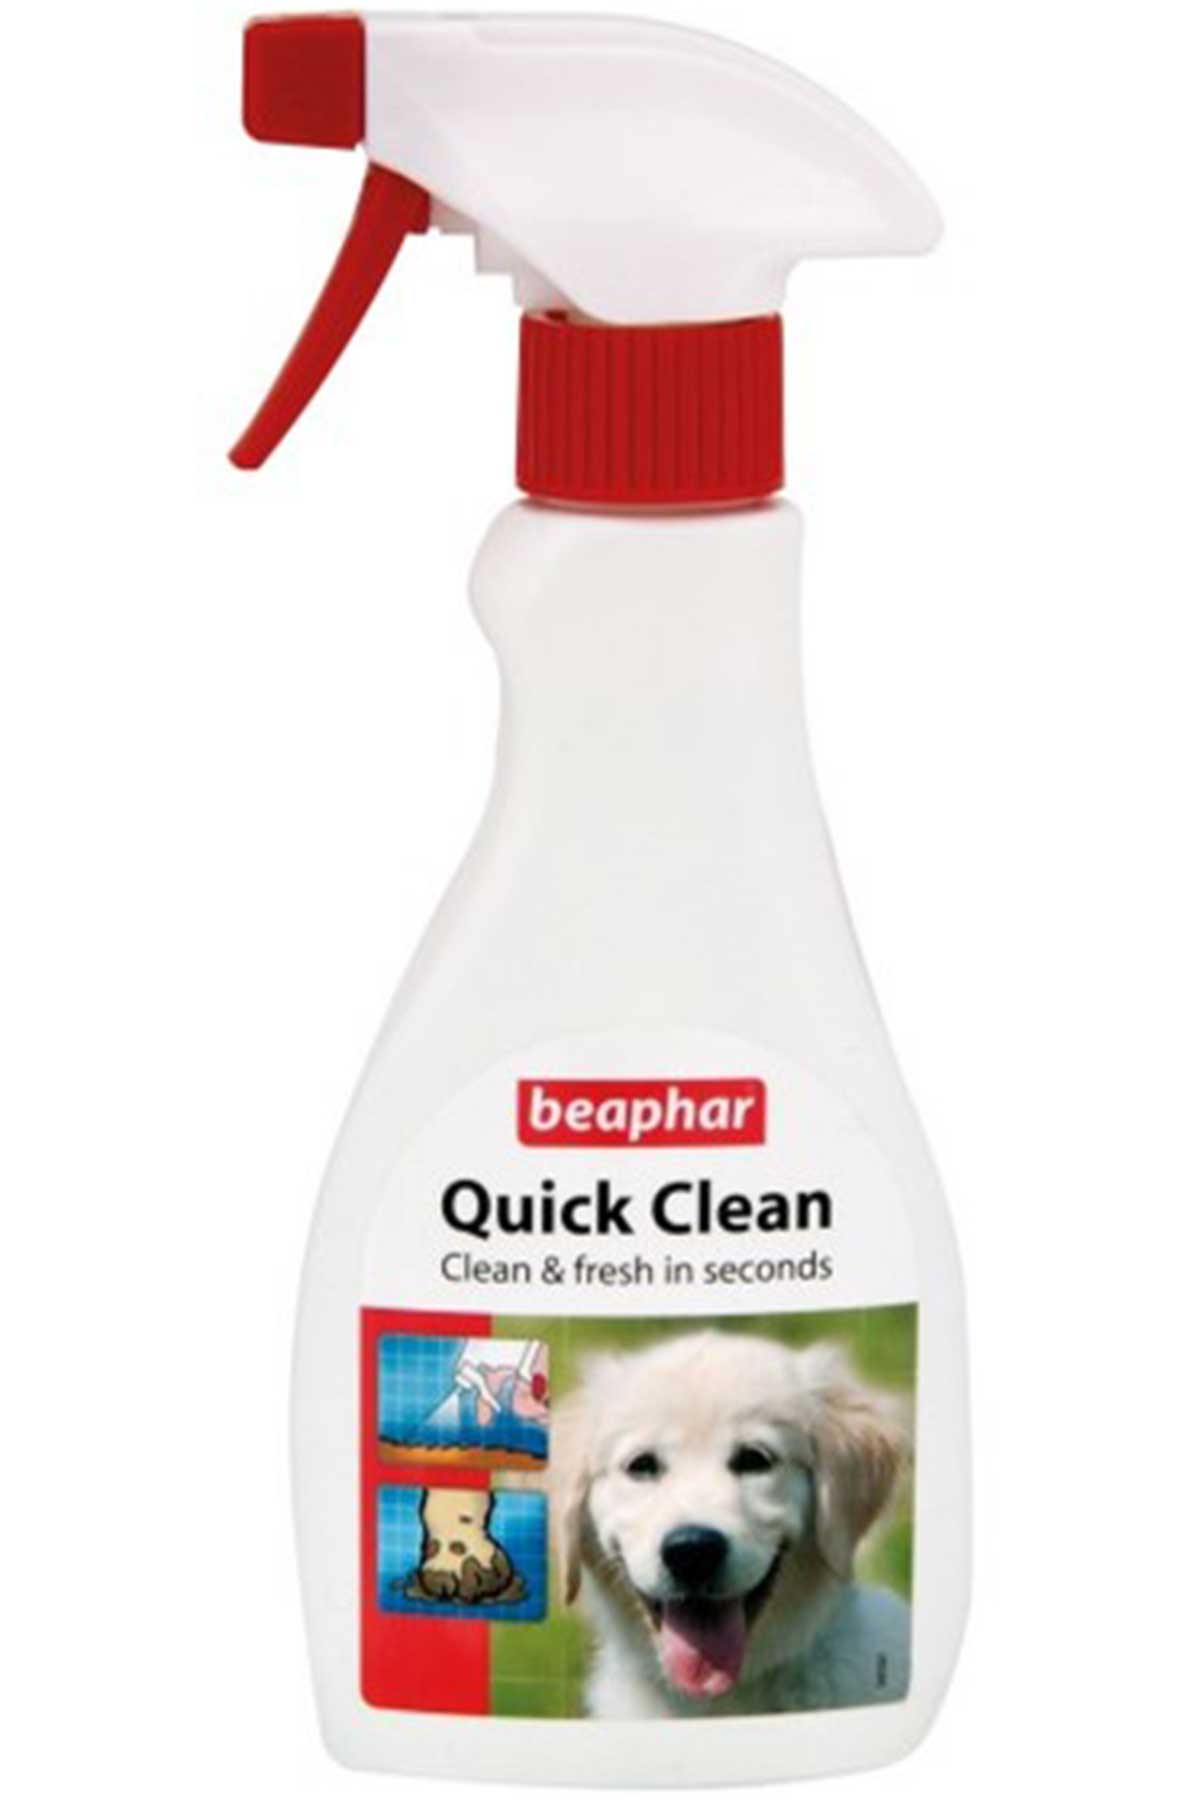 Beaphar Quick Clean Temizleme Spreyi 250ml